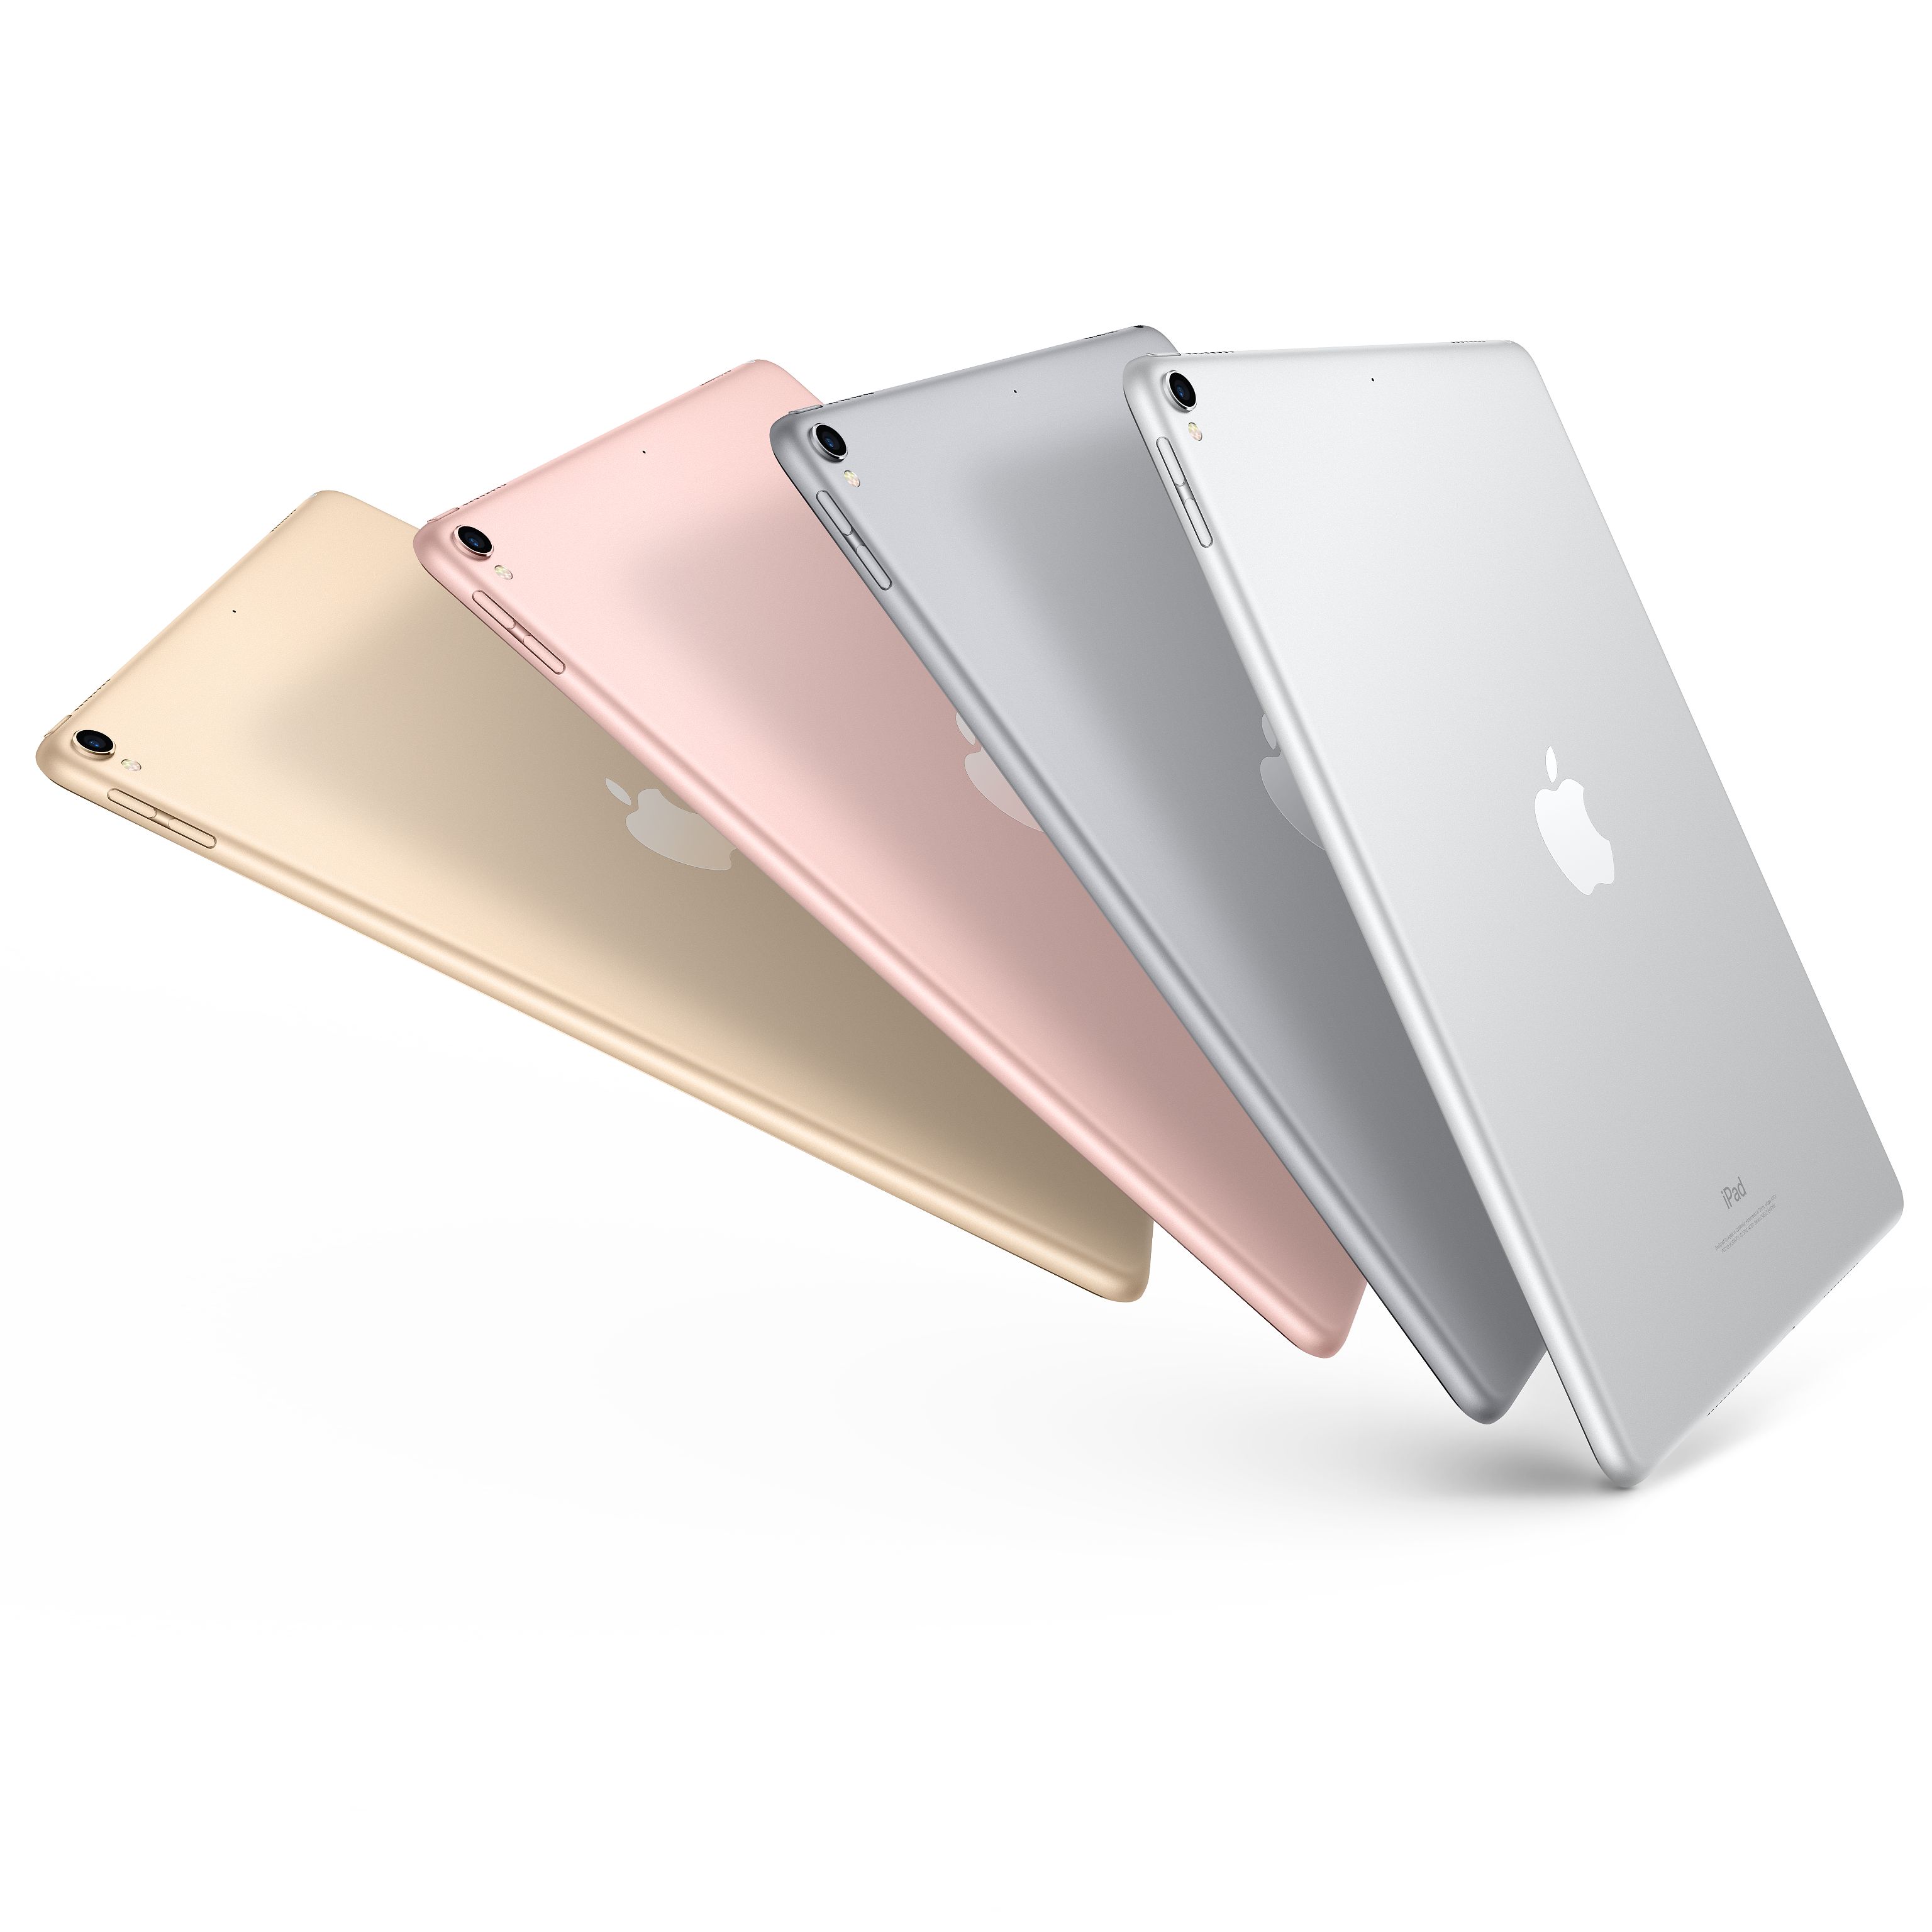 苹果(Apple) iPad pro 新款12.9英寸平板电脑 深空灰256GB WLAN版MP6G2CH/A